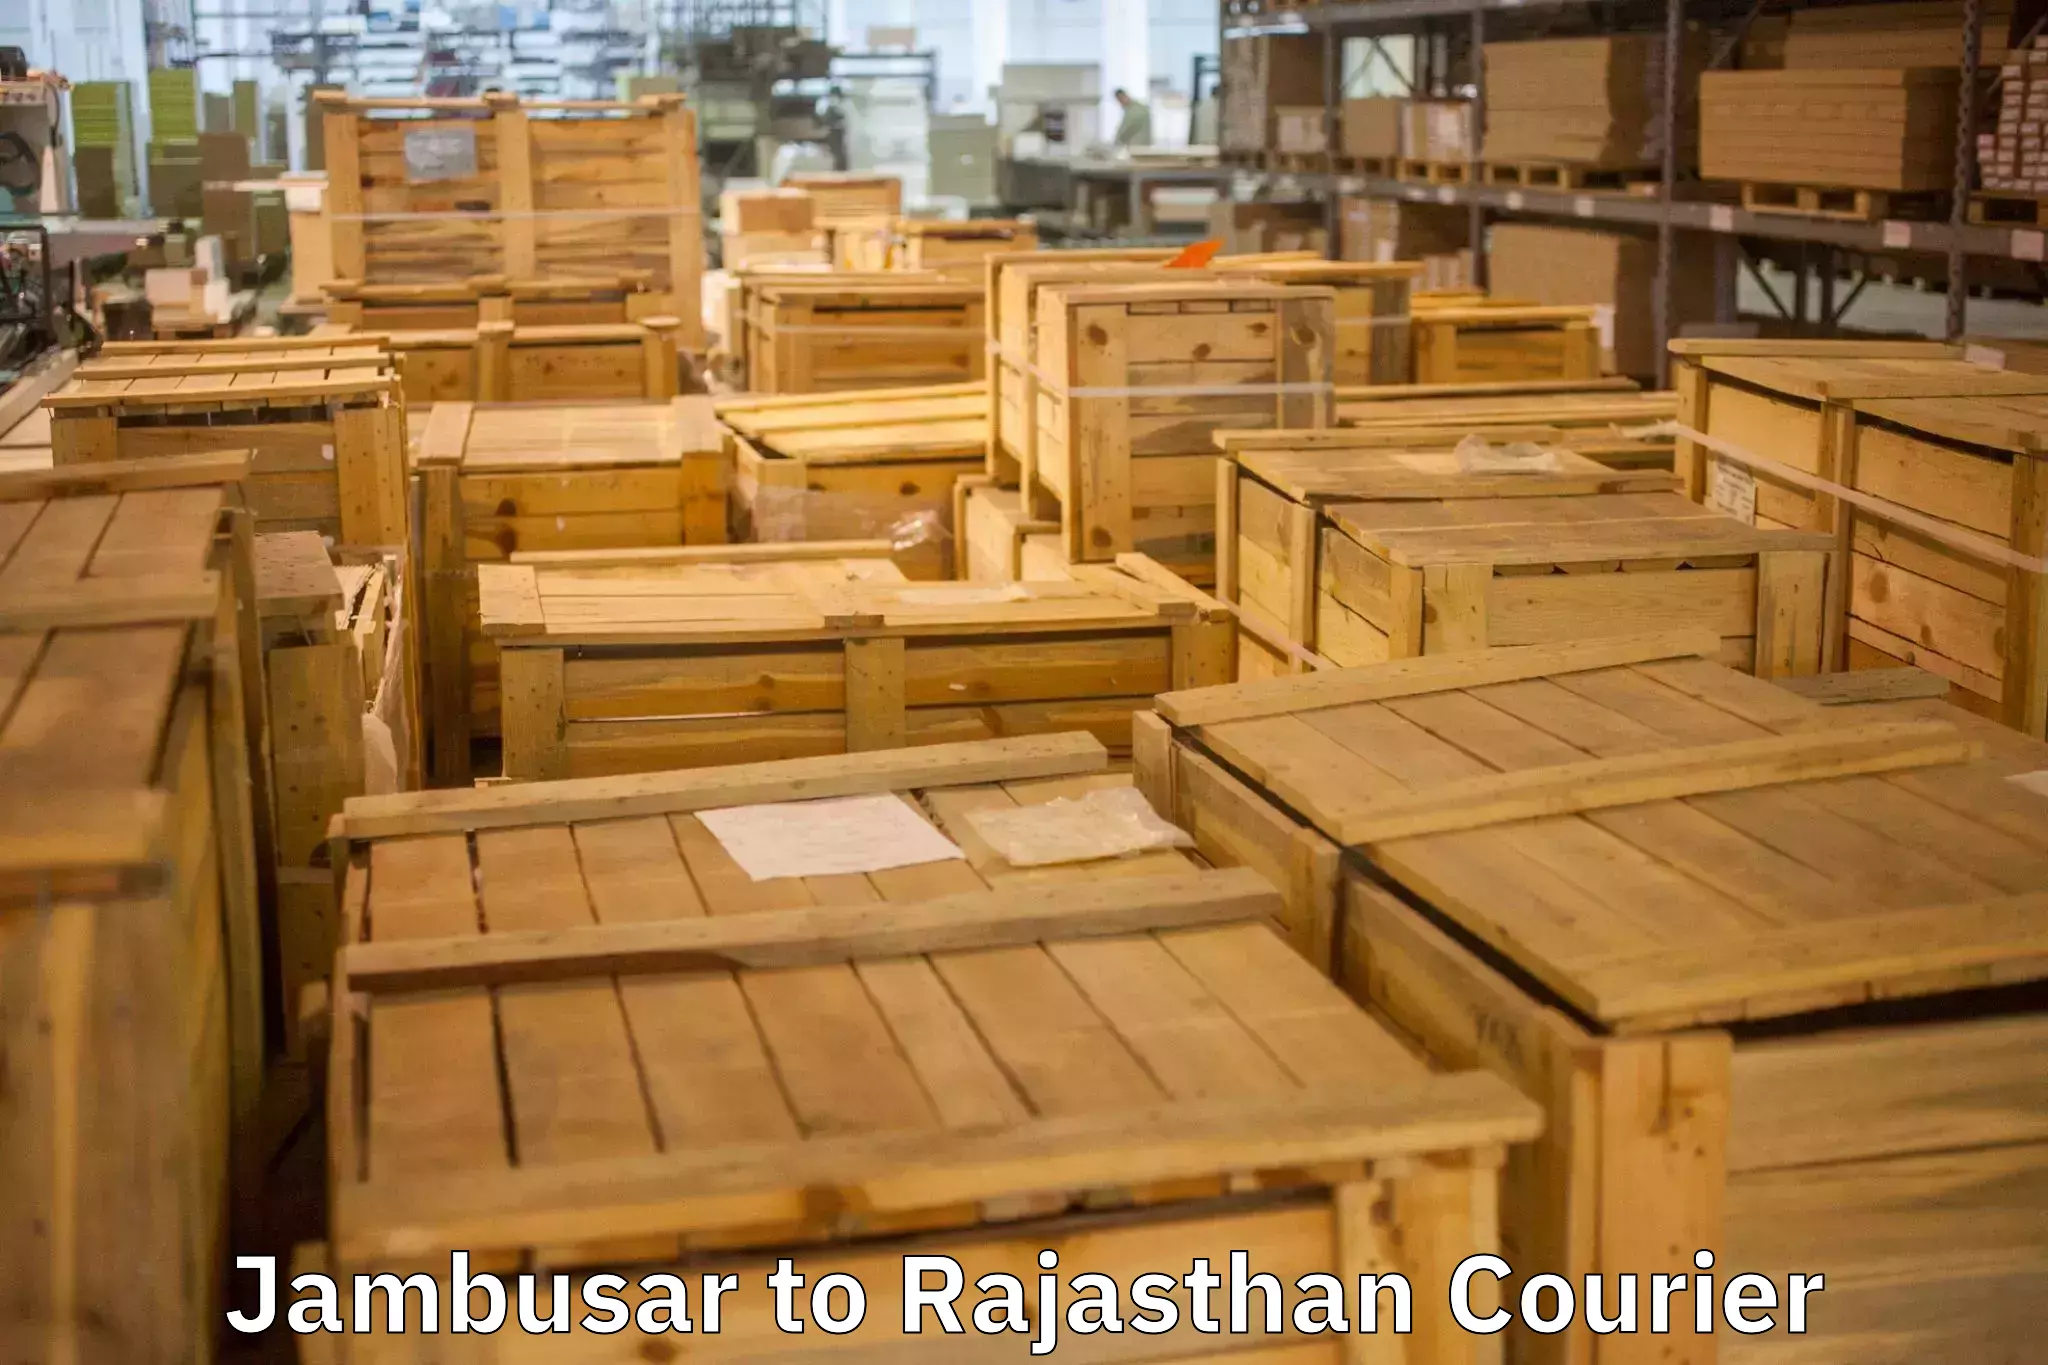 Expert goods movers Jambusar to Sambhar